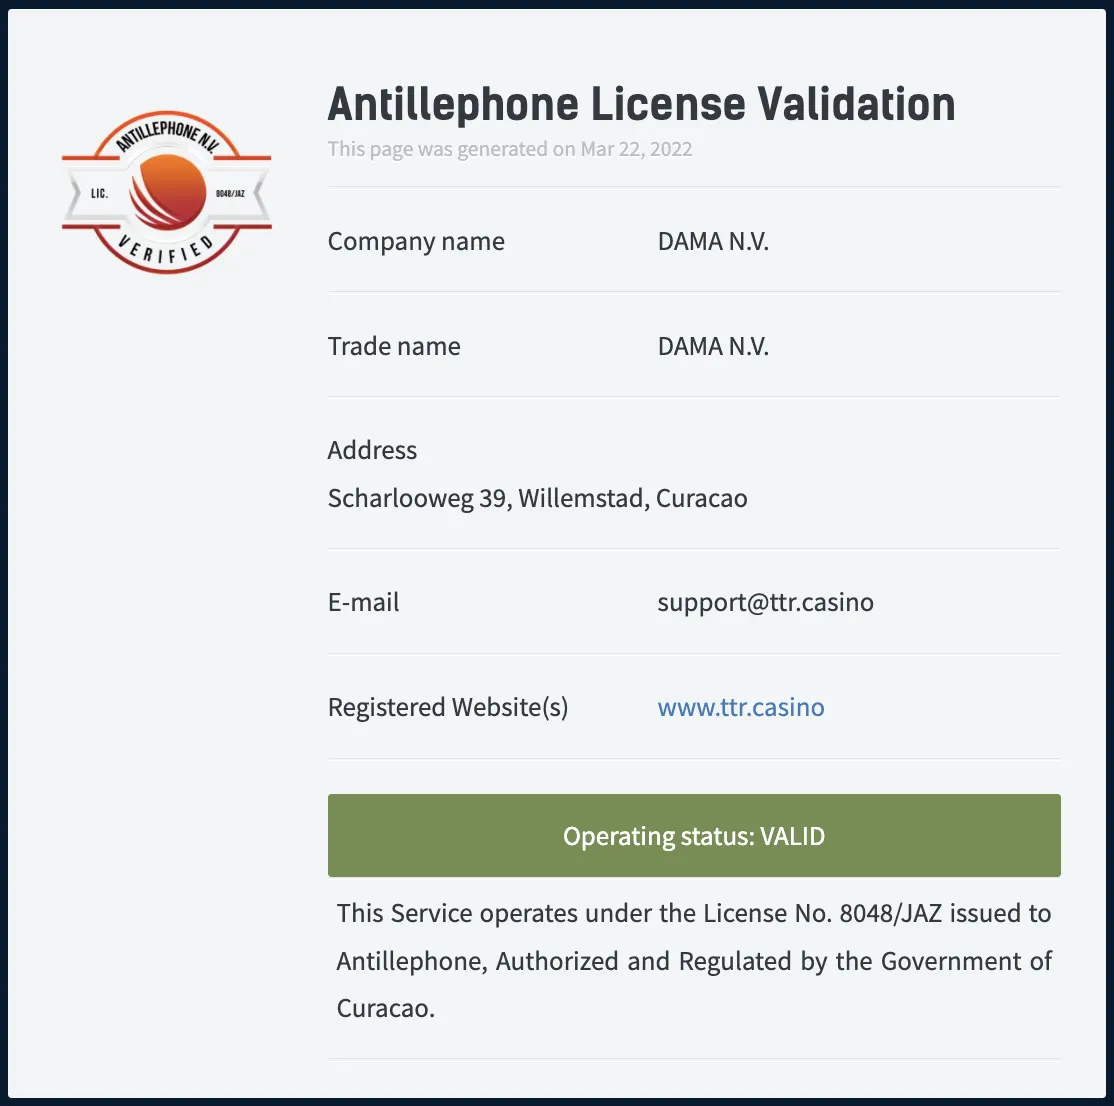 TTR Casino Antillephone License Validation